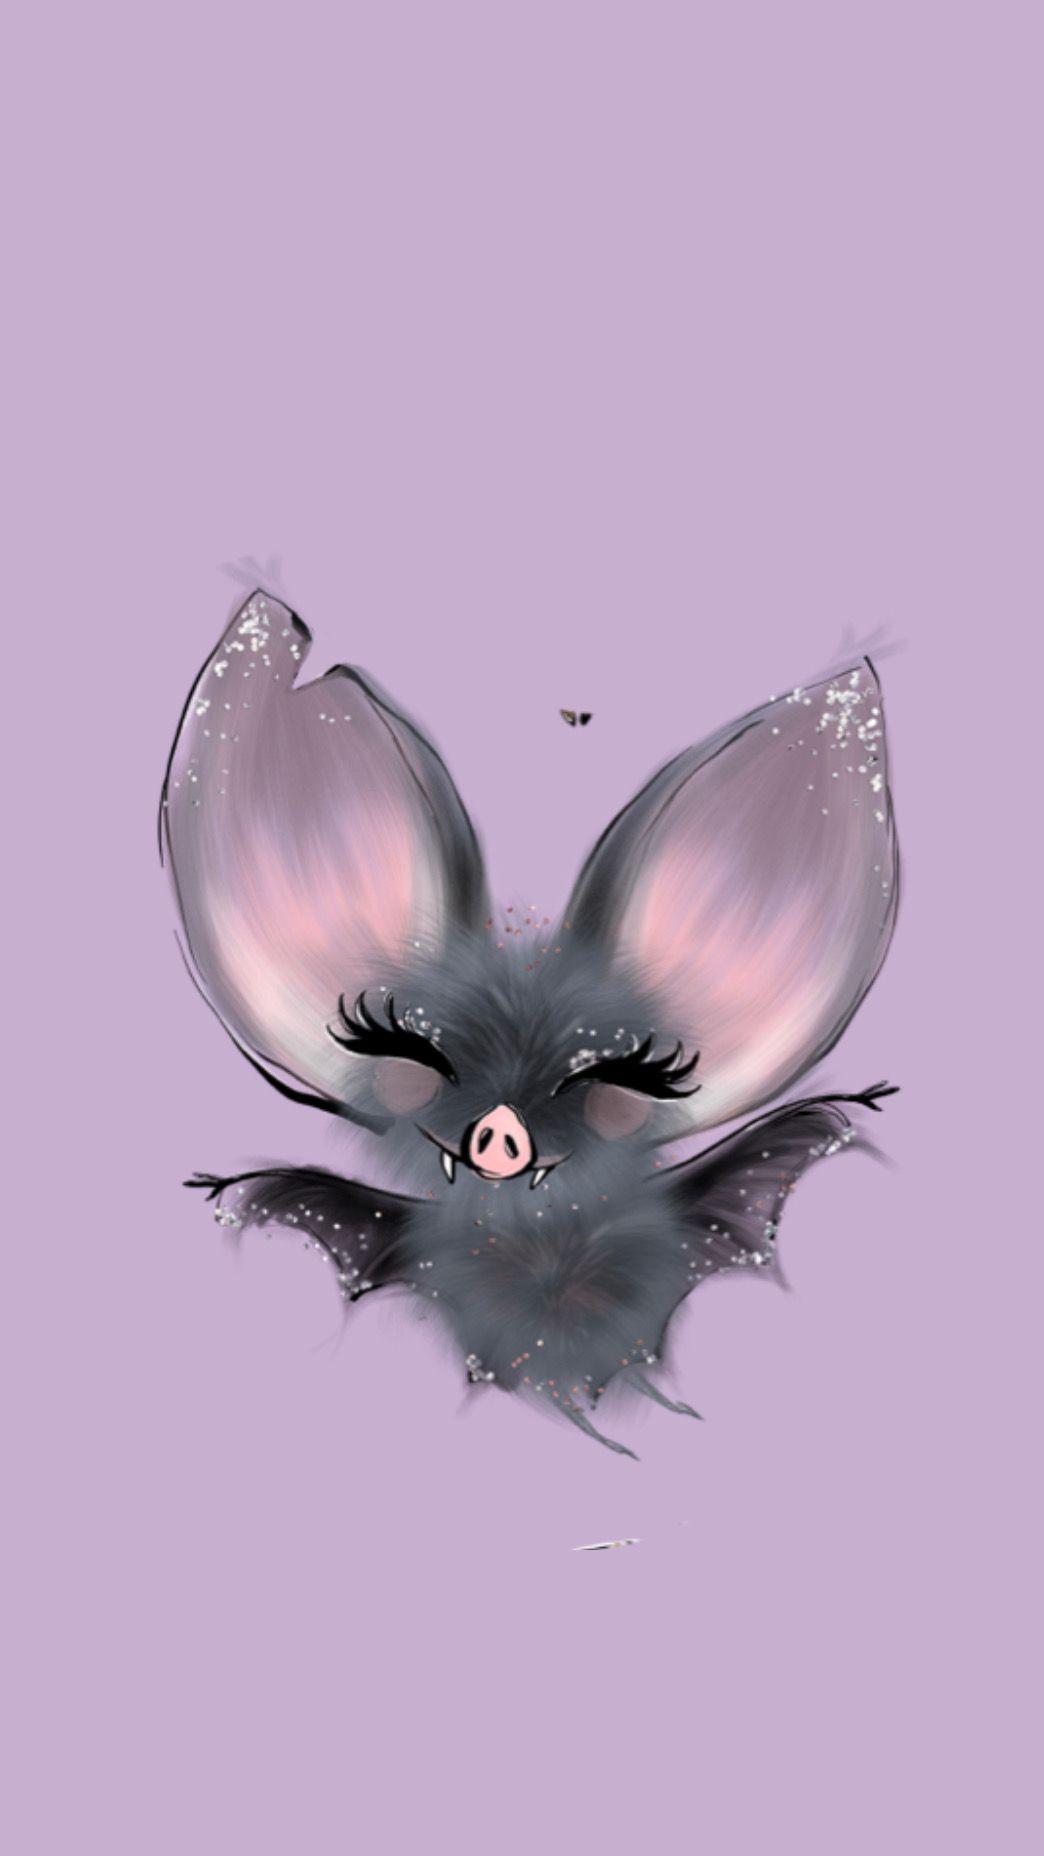 Cute Bat Wallpapers - Top Free Cute Bat Backgrounds - WallpaperAccess